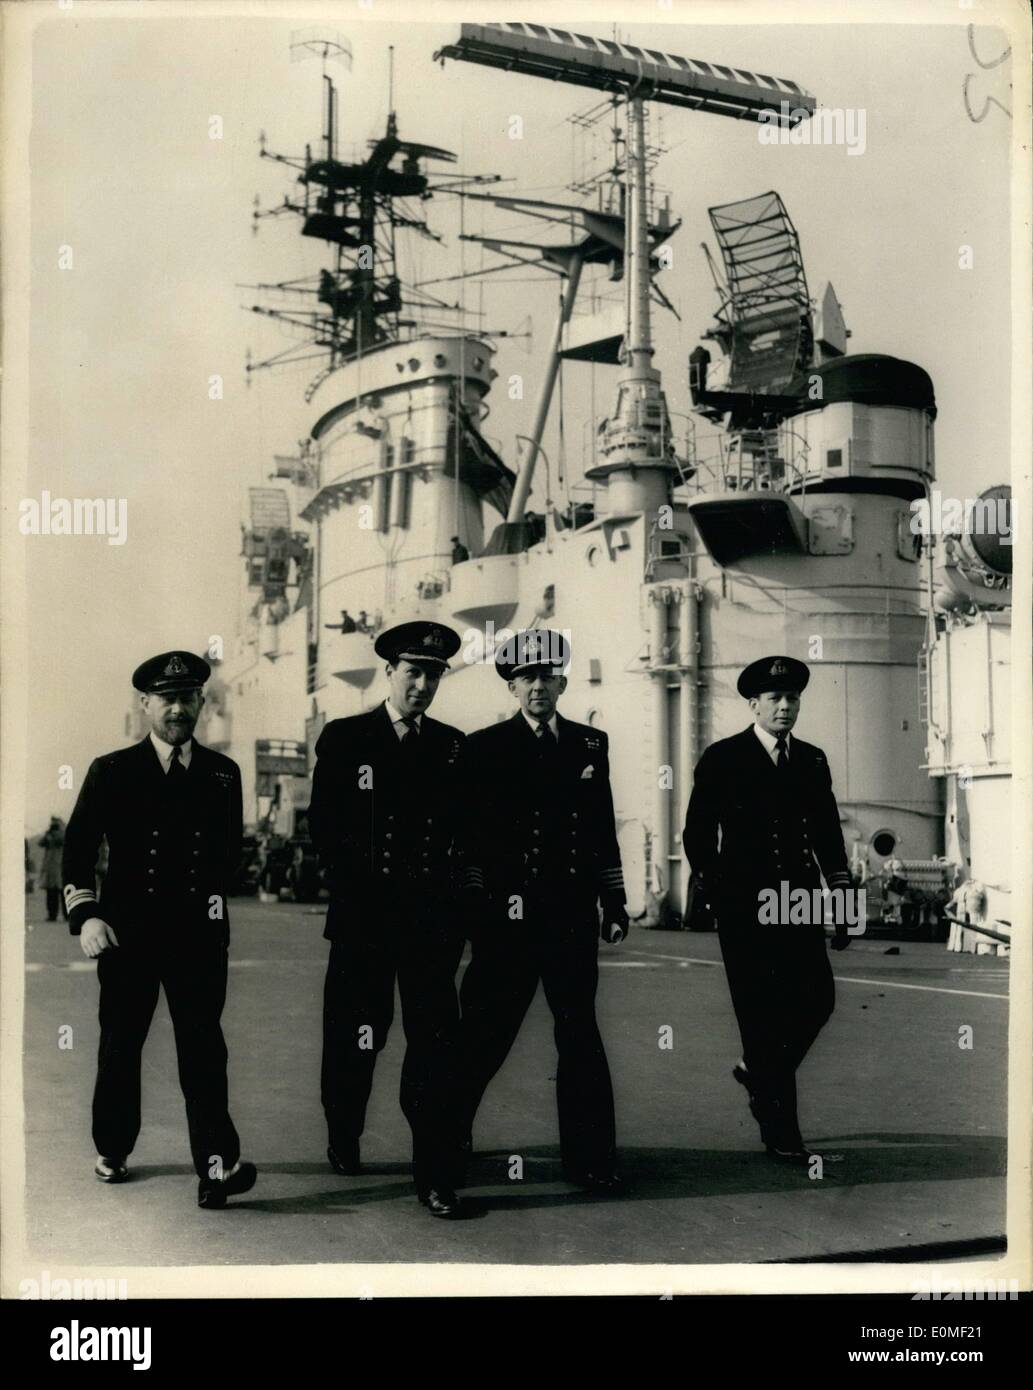 02 février 1955 - H.M.S Ark Royal à être commandé. Quatre agents de son Pre-Decessor. Le dernier porte-avion - H.M.S. Ark Royal - construit au coût de 25 000 000 est d'être mis en service demain. Elle dispose de tous les derniers appareils y compris pont-angle;sites miroir -catapaults vapeur etc. a une boulangerie et d'opération. Photo montre. Quatre membres de l'ancien "Ark Royal", qui a été coulé en Méditerranée en 1945 vu à bord de leur nouveau navire à Burkenhead aujourd'hui. Ils sont la L-R : Le lieutenant commandant R.W. Keresiey : Commandant M.F. Est tombé ; le capitaine D.R. Campbell et le Lieutenant Banque D'Images